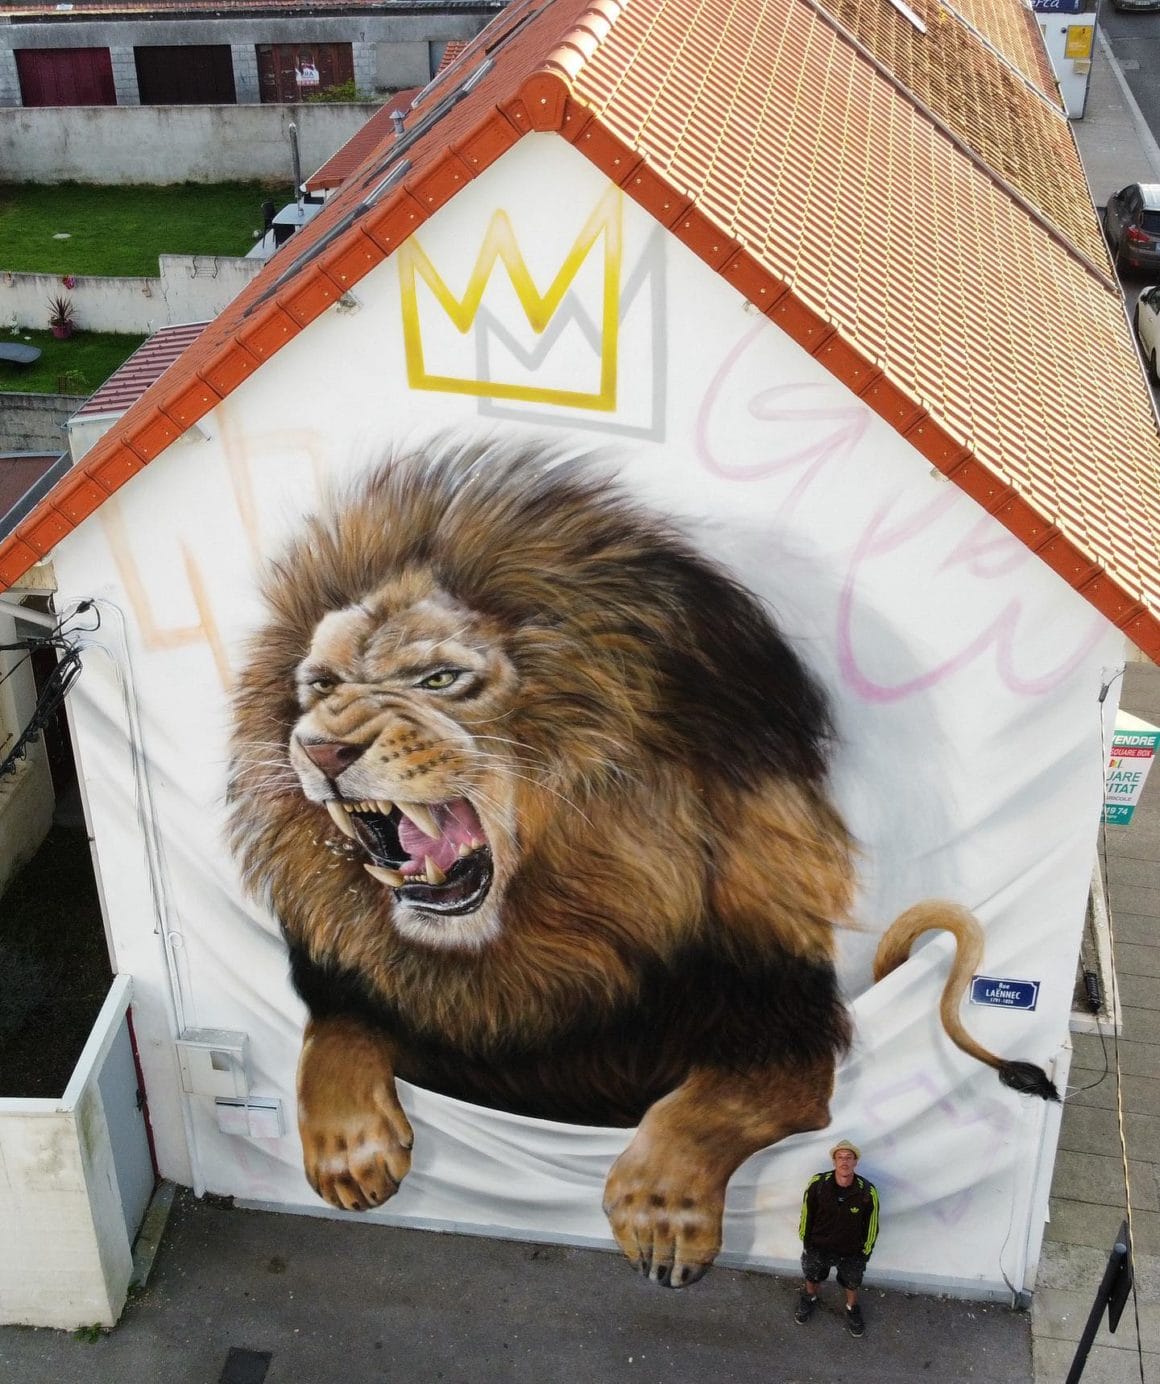 Tag d'un lion peint à Boulogne par GrafoDeco